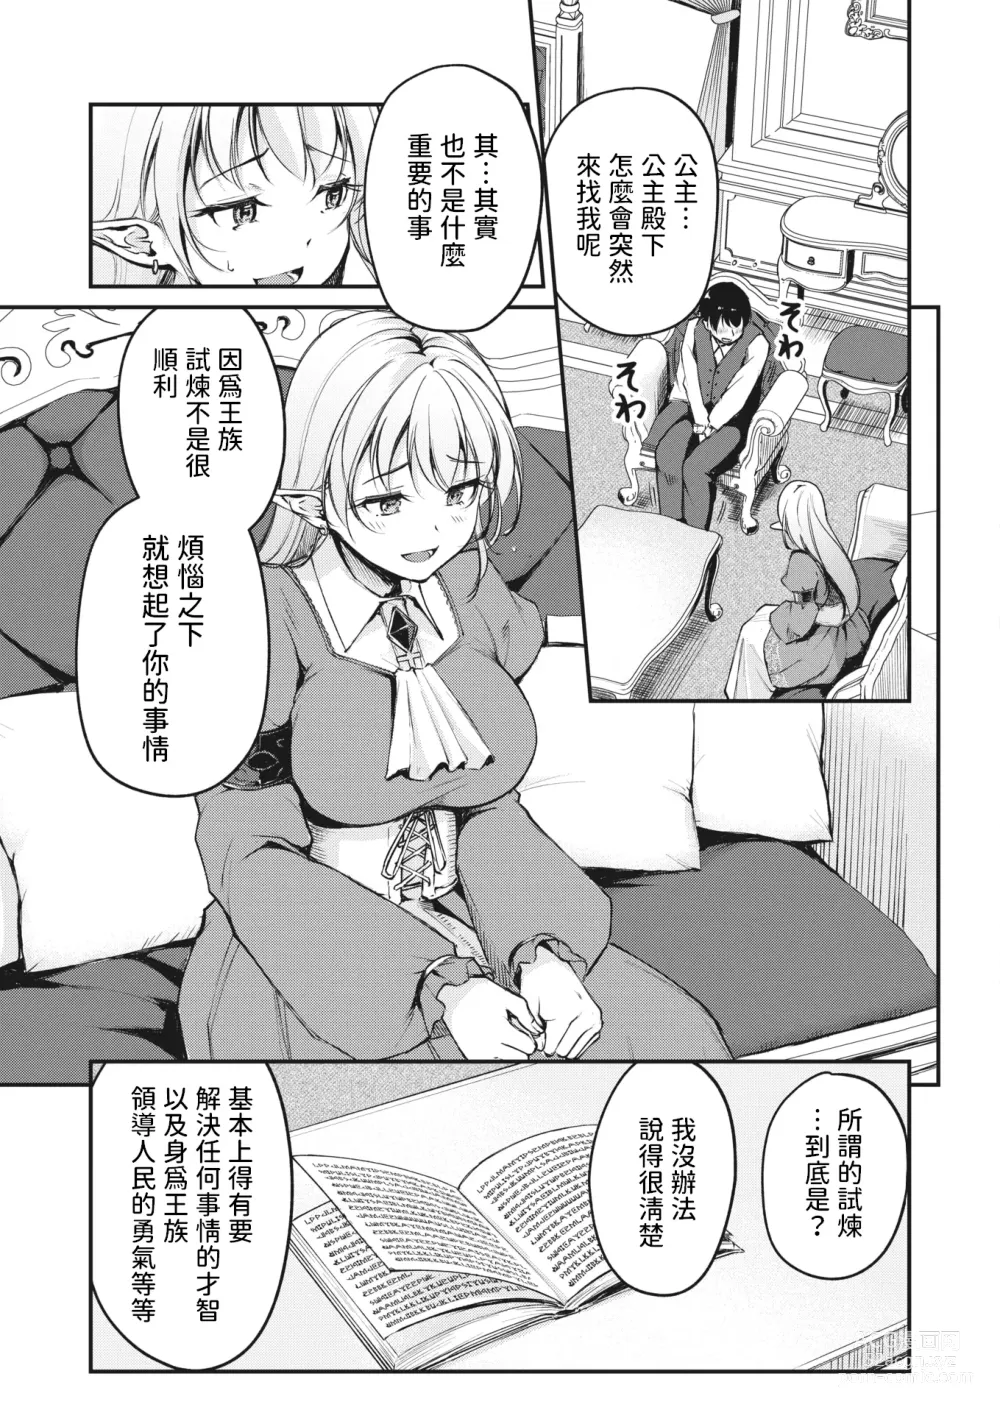 Page 7 of manga Hakoiri Elf no Oujo-sama